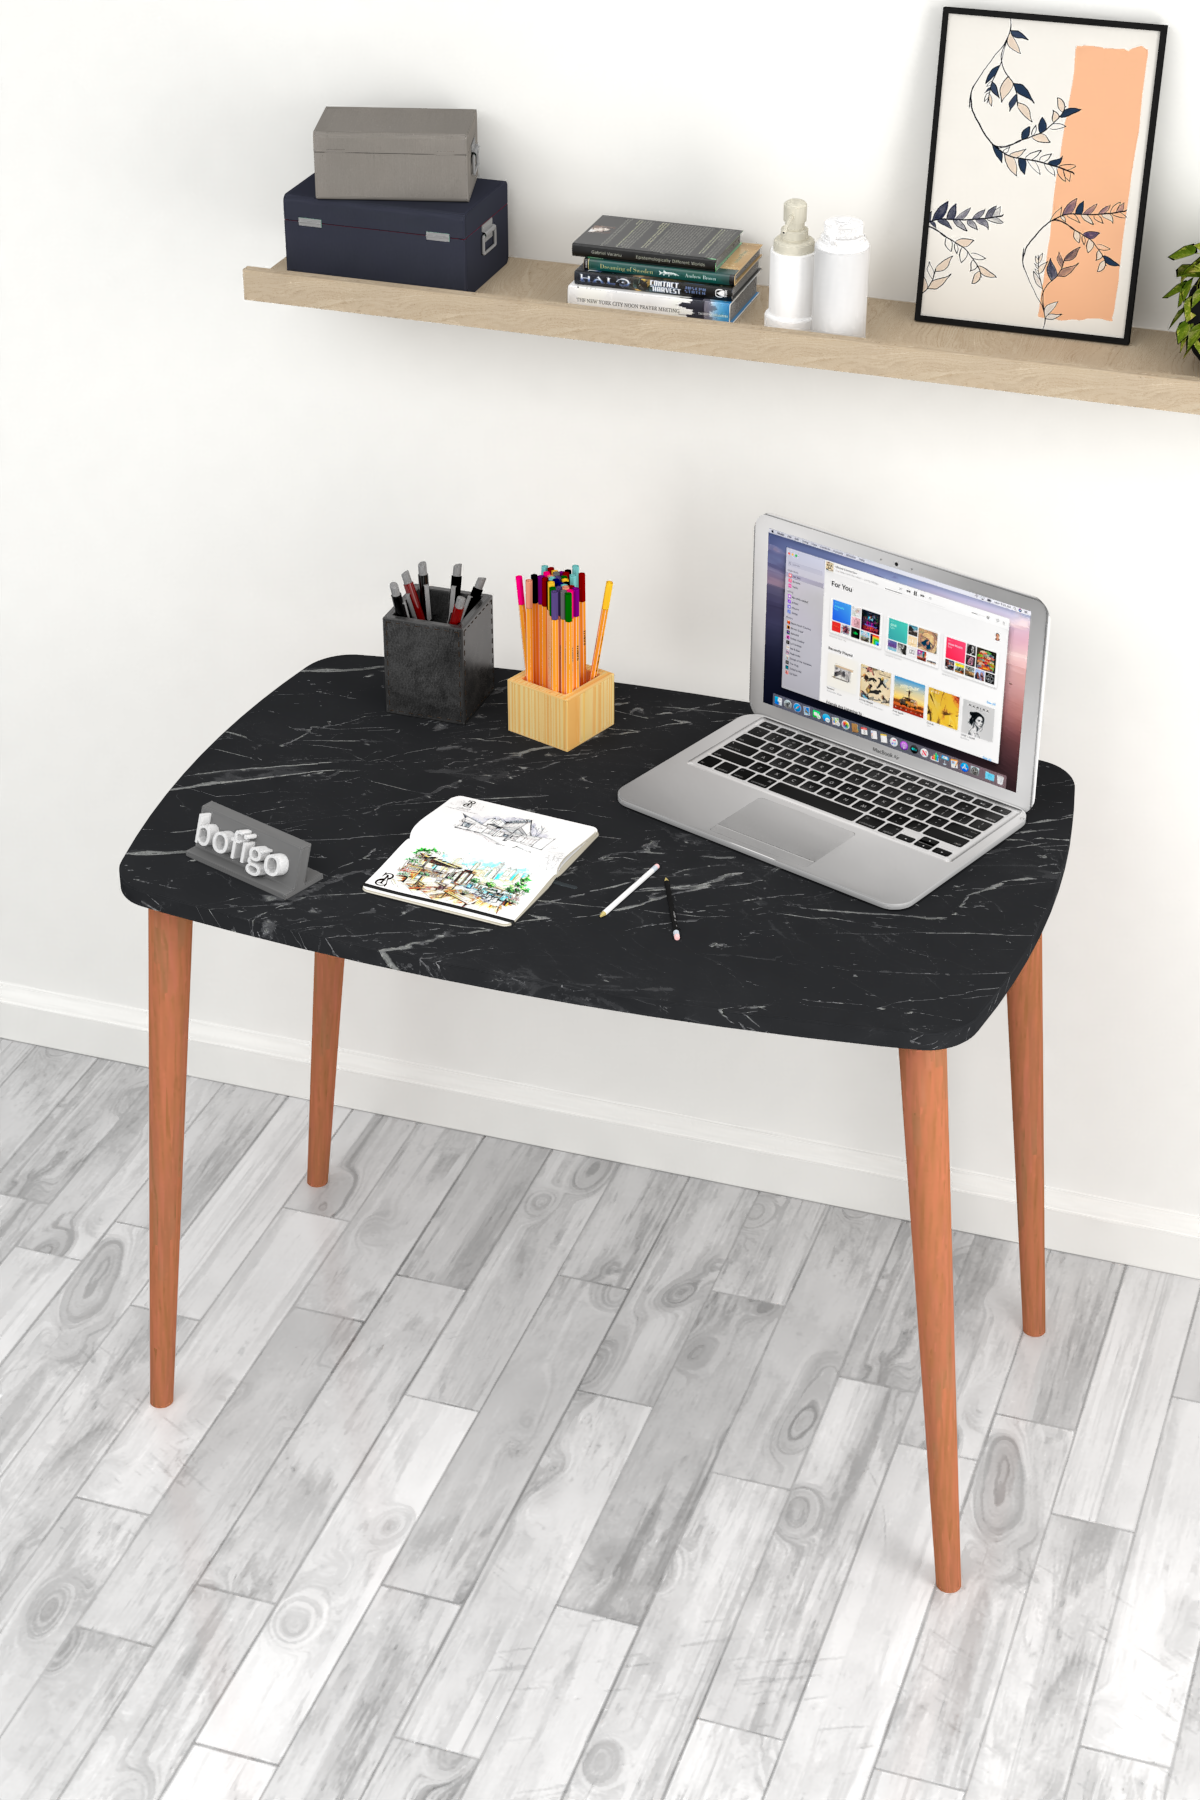 Bofigo Desk 60x90 Cm Bendir (Wooden Leg)